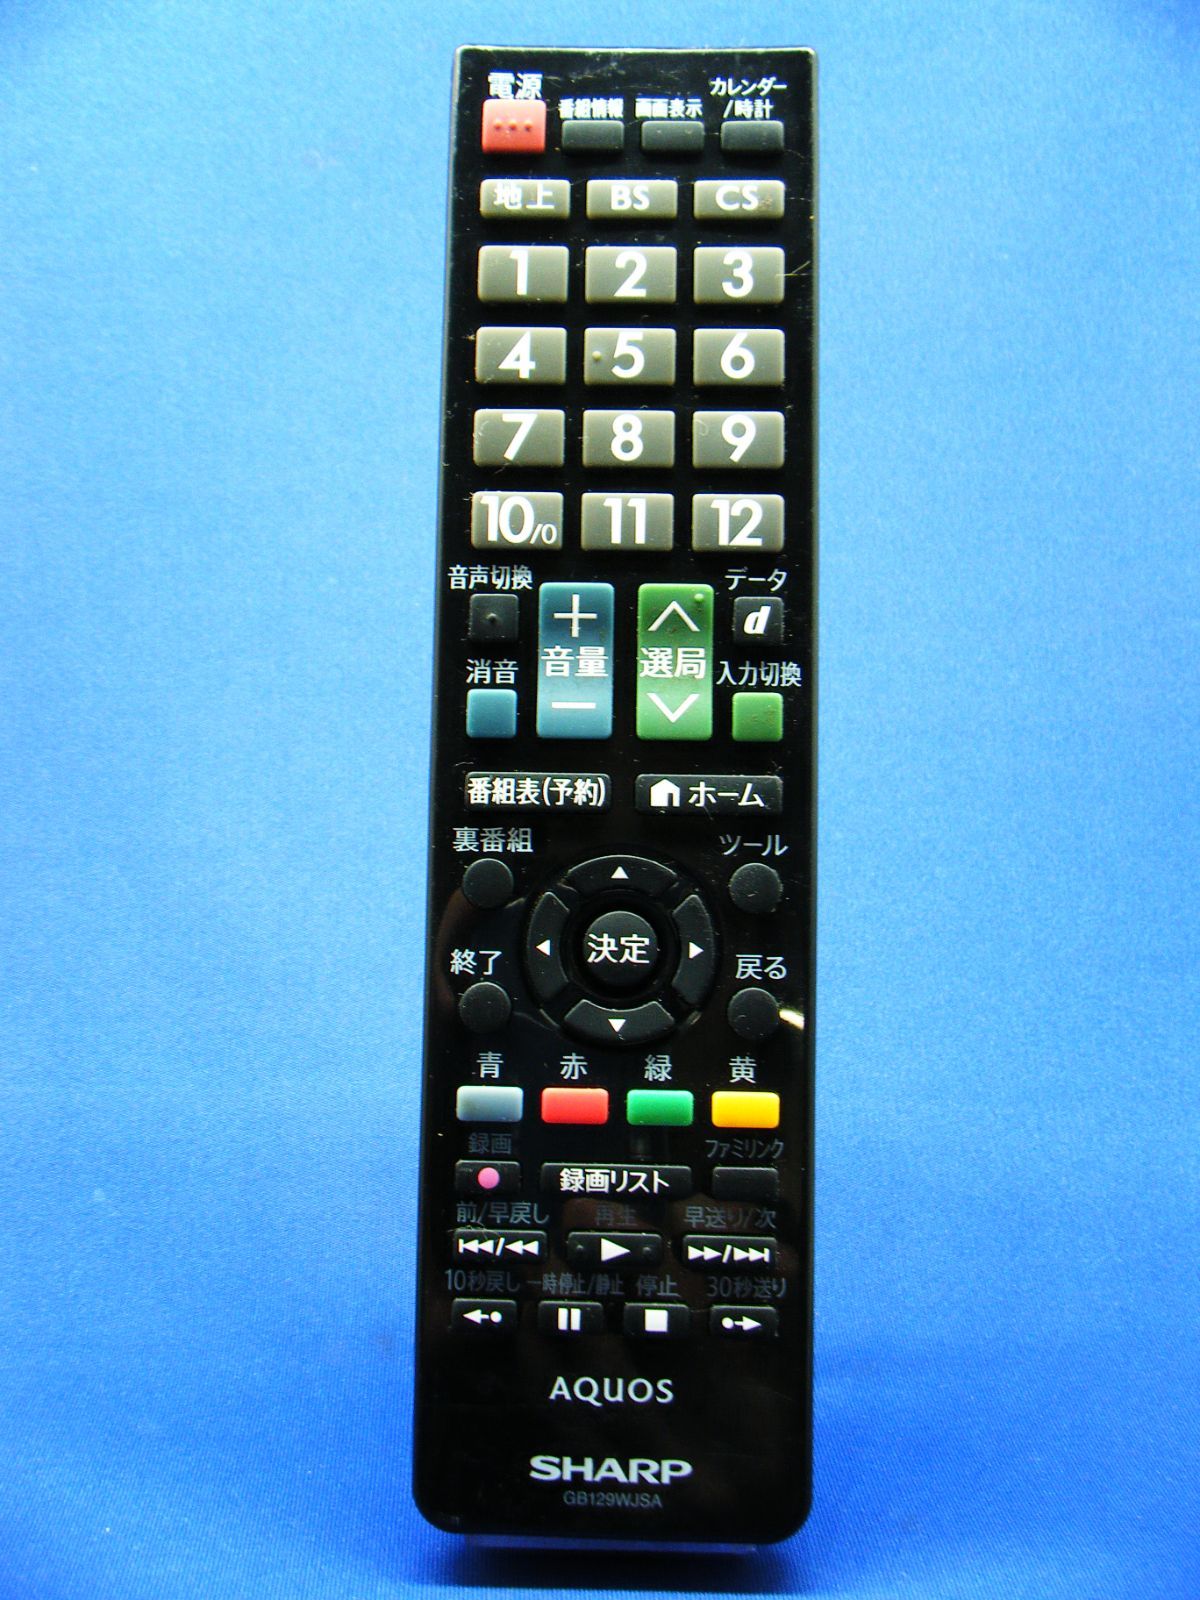 AQUOS GB129WJSA テレビリモコン - テレビ